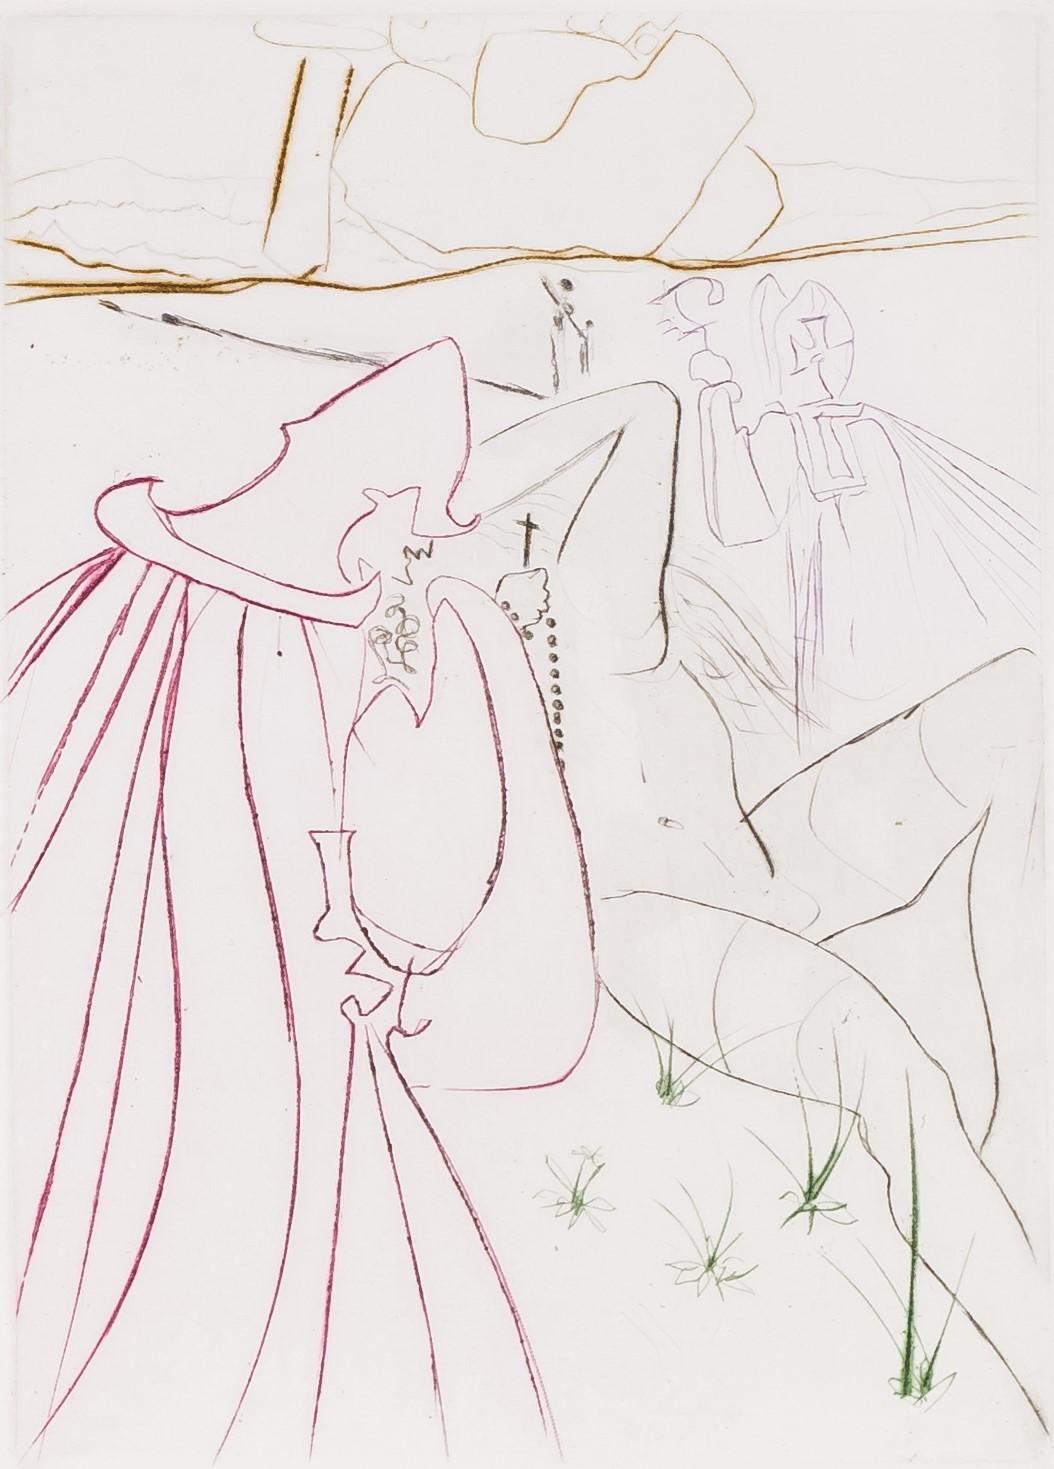 La Ressuscitée, 1972 (Le Decameron, Plate J) - Surrealist Print by Salvador Dalí